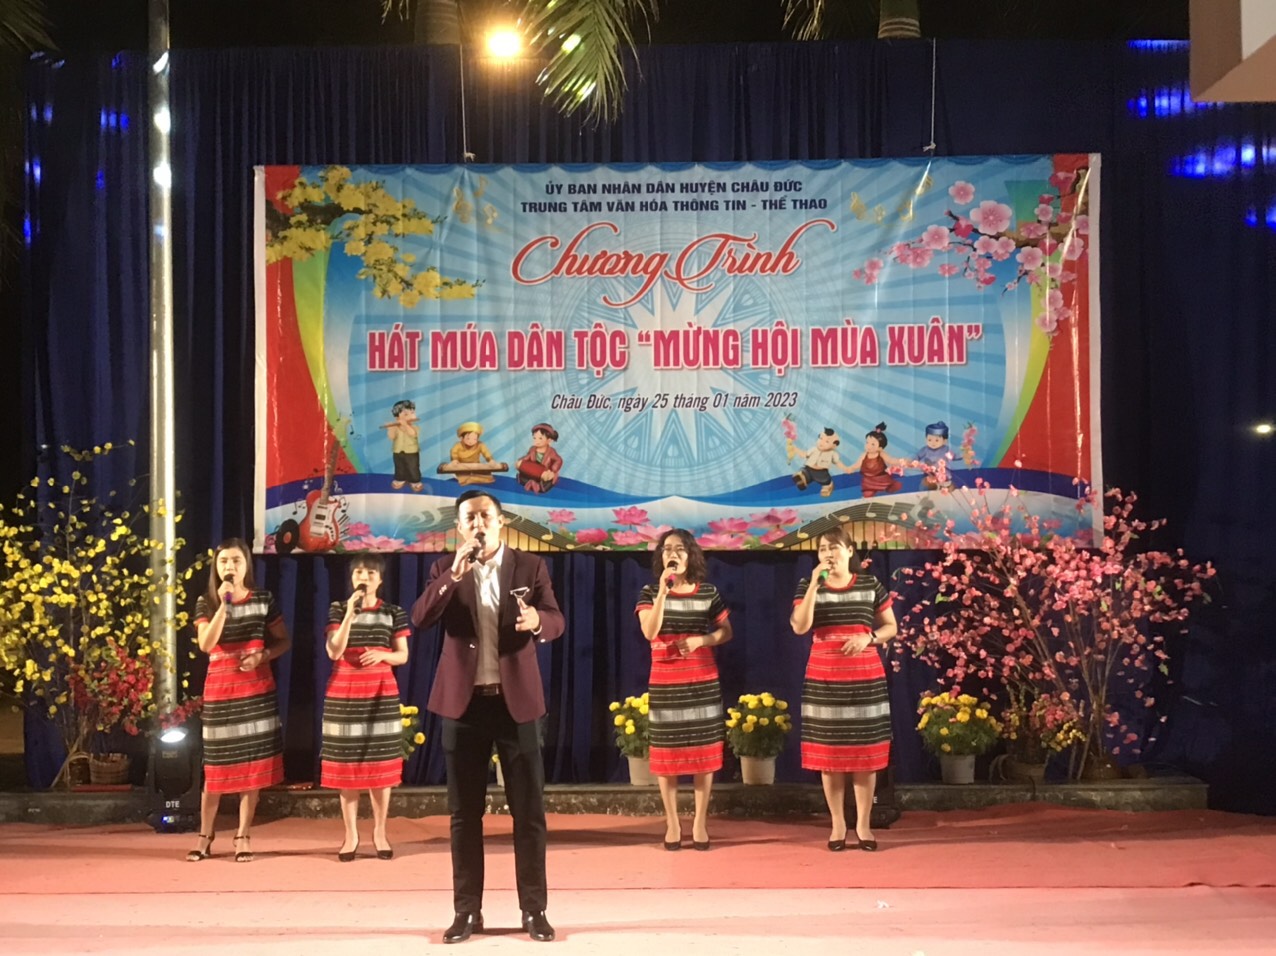 Một tiết mục văn nghệ trong chương trình “Hát múa dân tộc mừng hội mùa Xuân” tại huyện Châu Đức vào tối mùng 4 Tết.